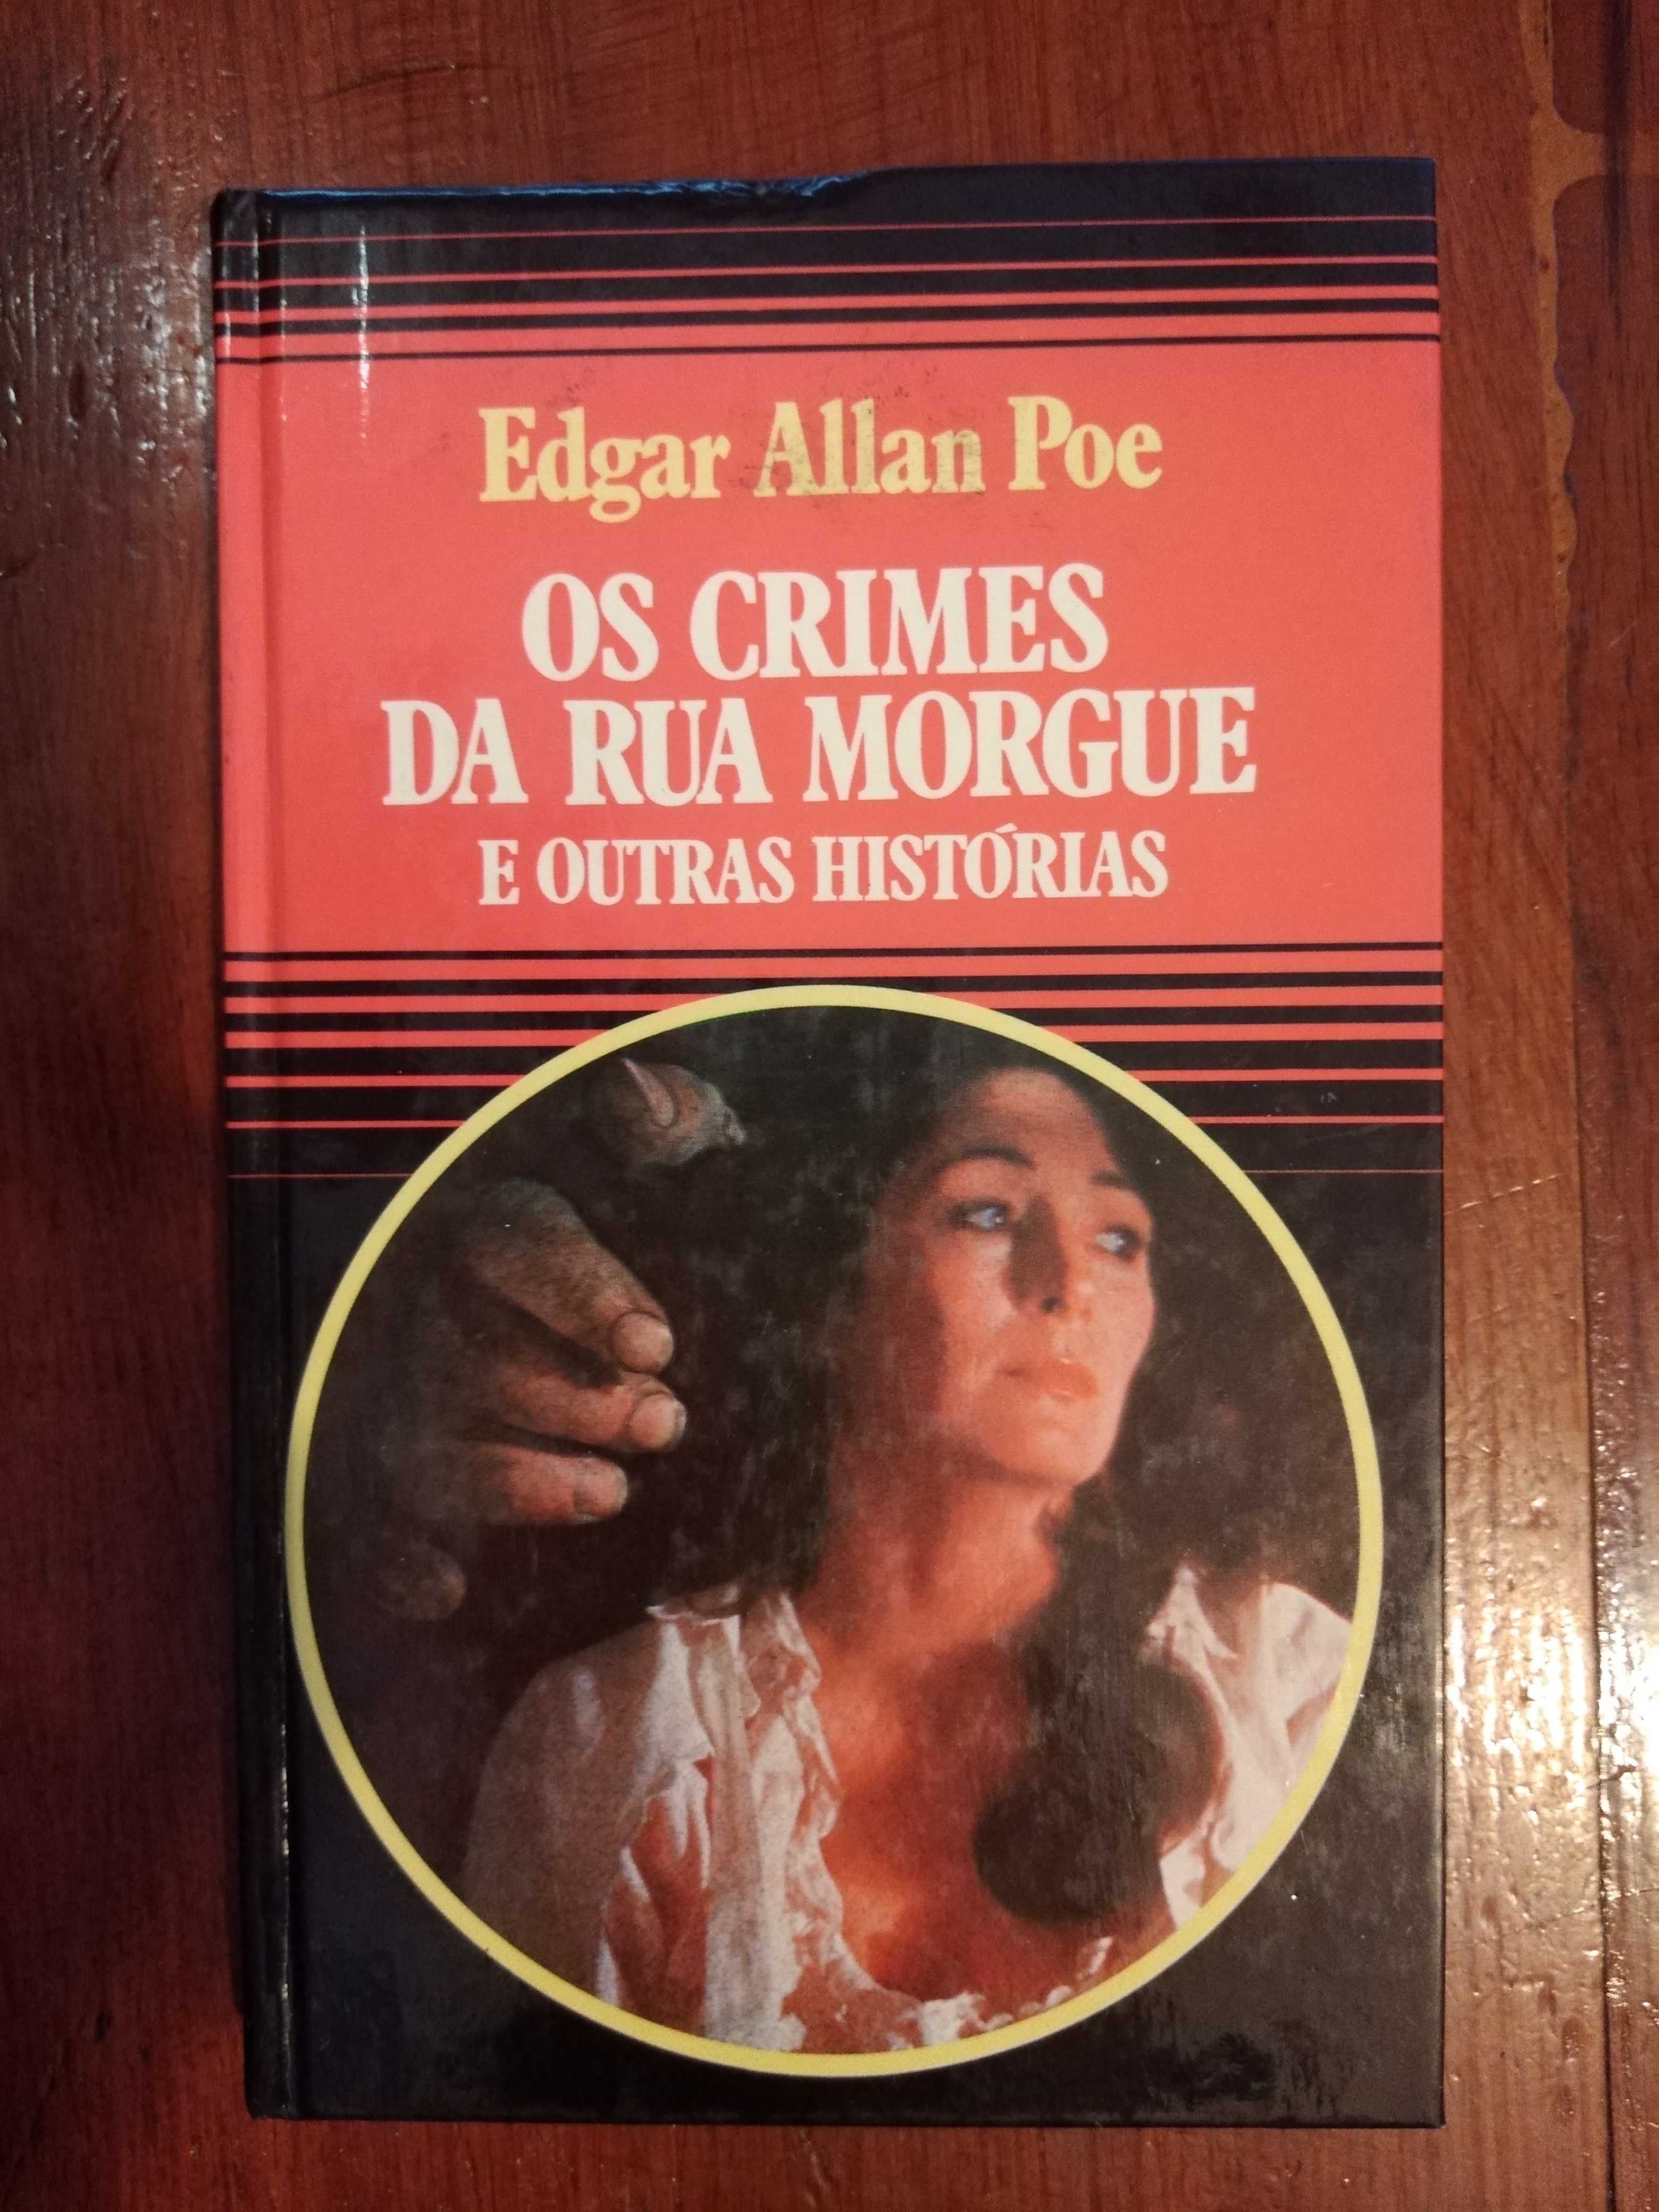 Edgar Allan Poe - Os crimes da Rua Morgue